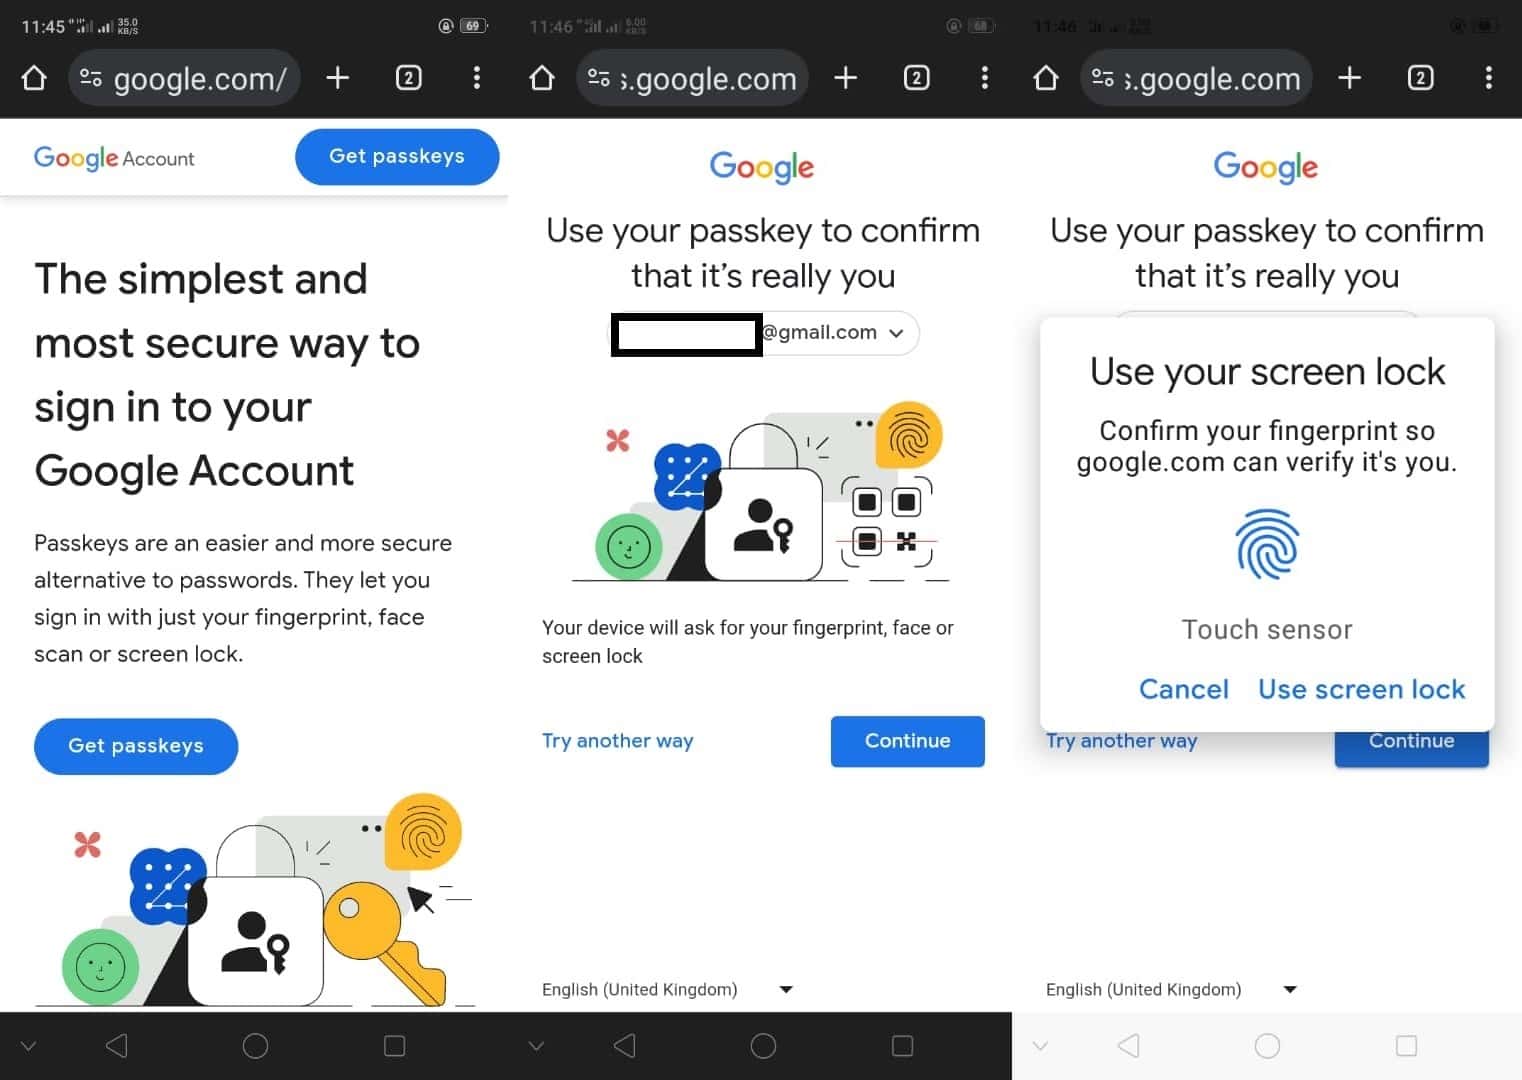 كيف تعمل ميزة مفاتيح مرور جوجل Google Passkeys الجديدة؟